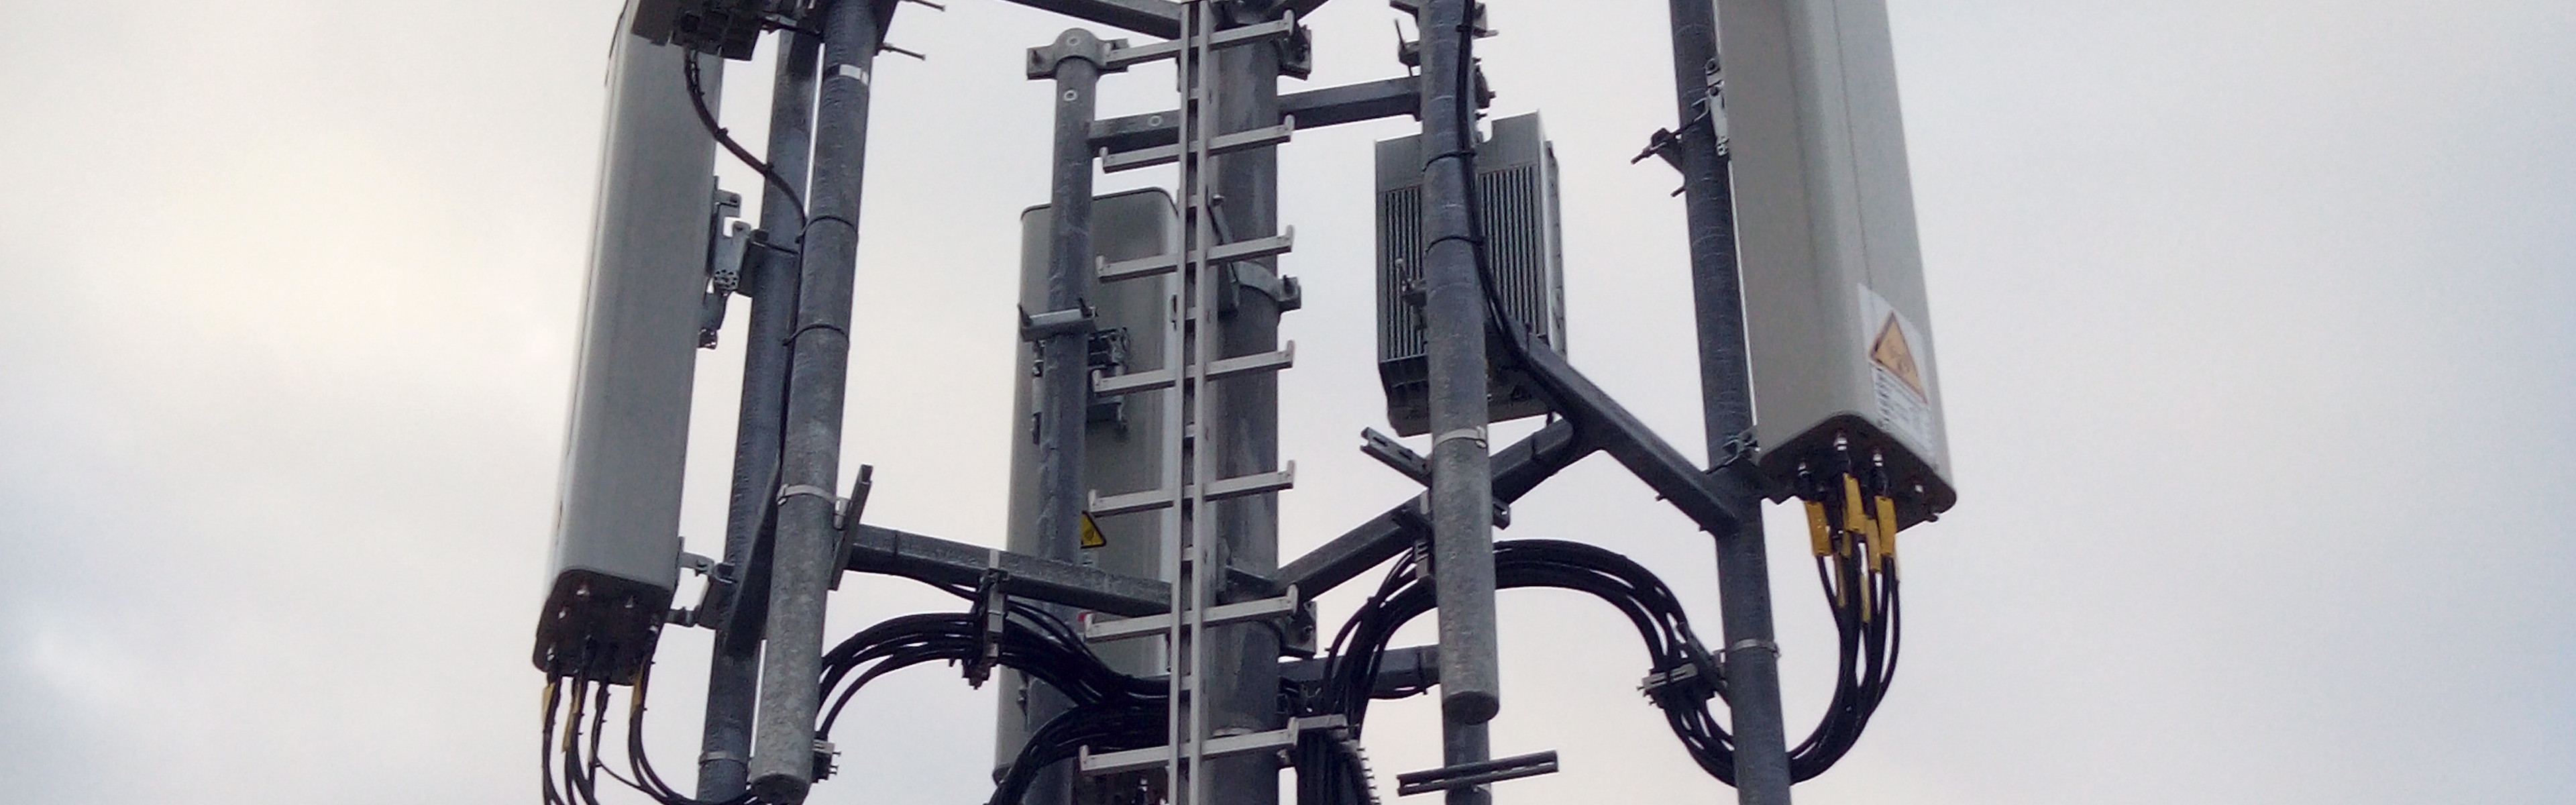 Fotografie koruny telekomunikační věže